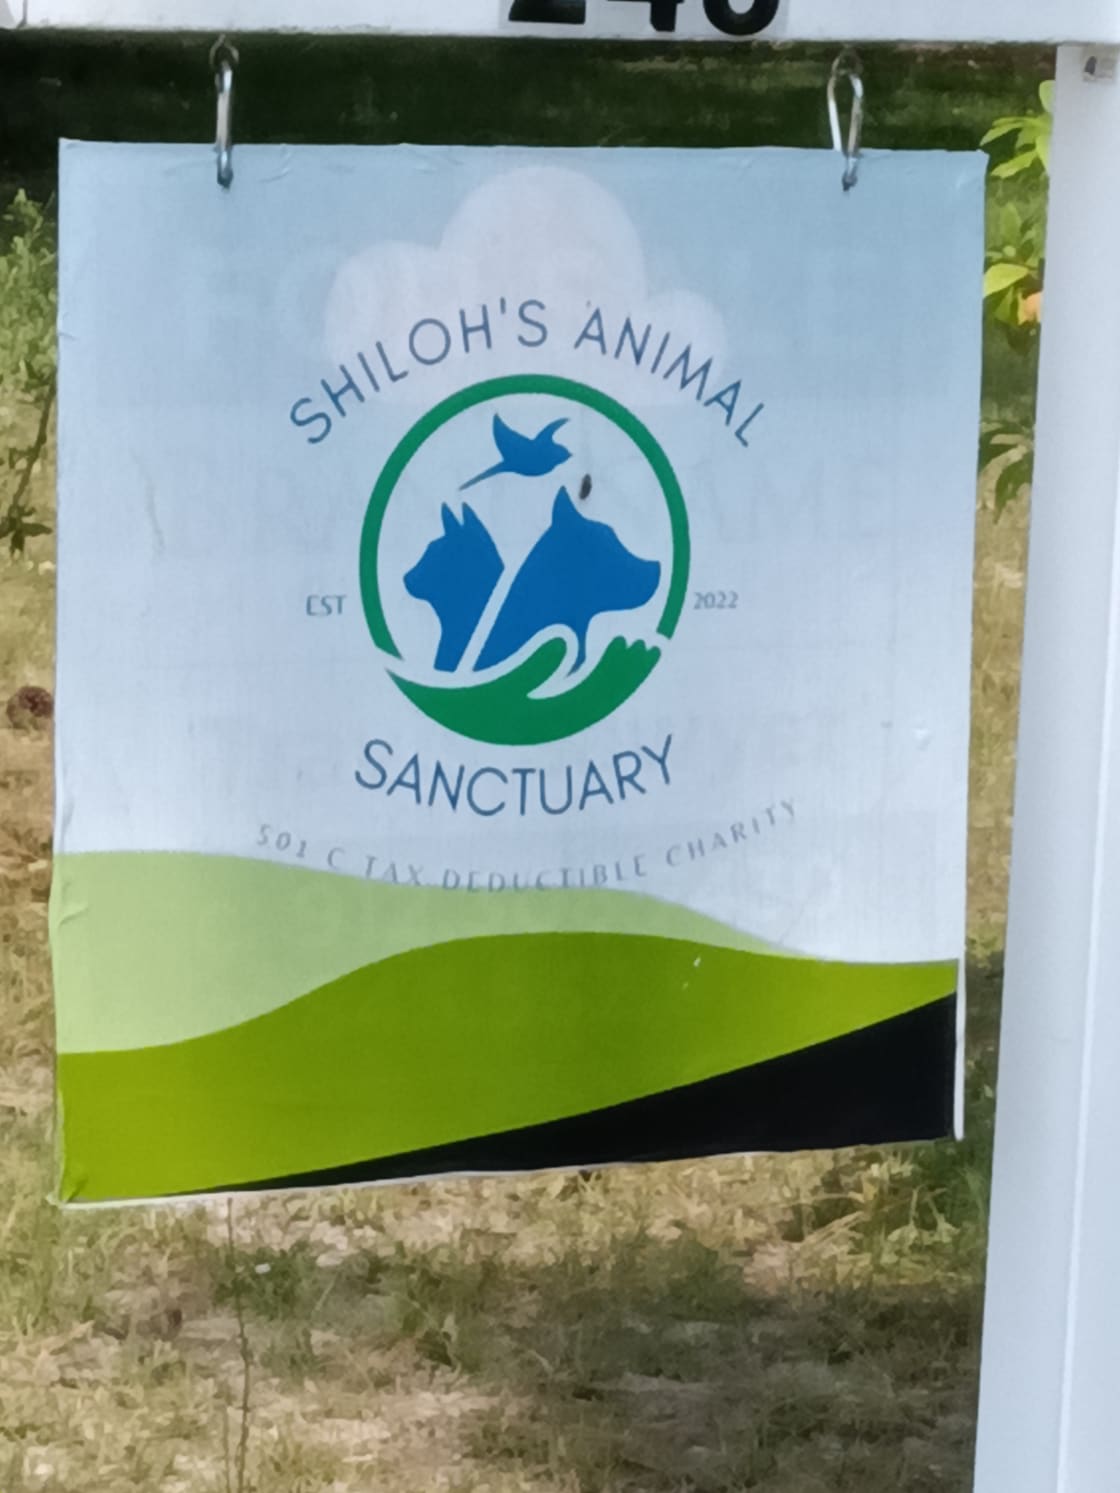 Shilohs Animal Sanctuary